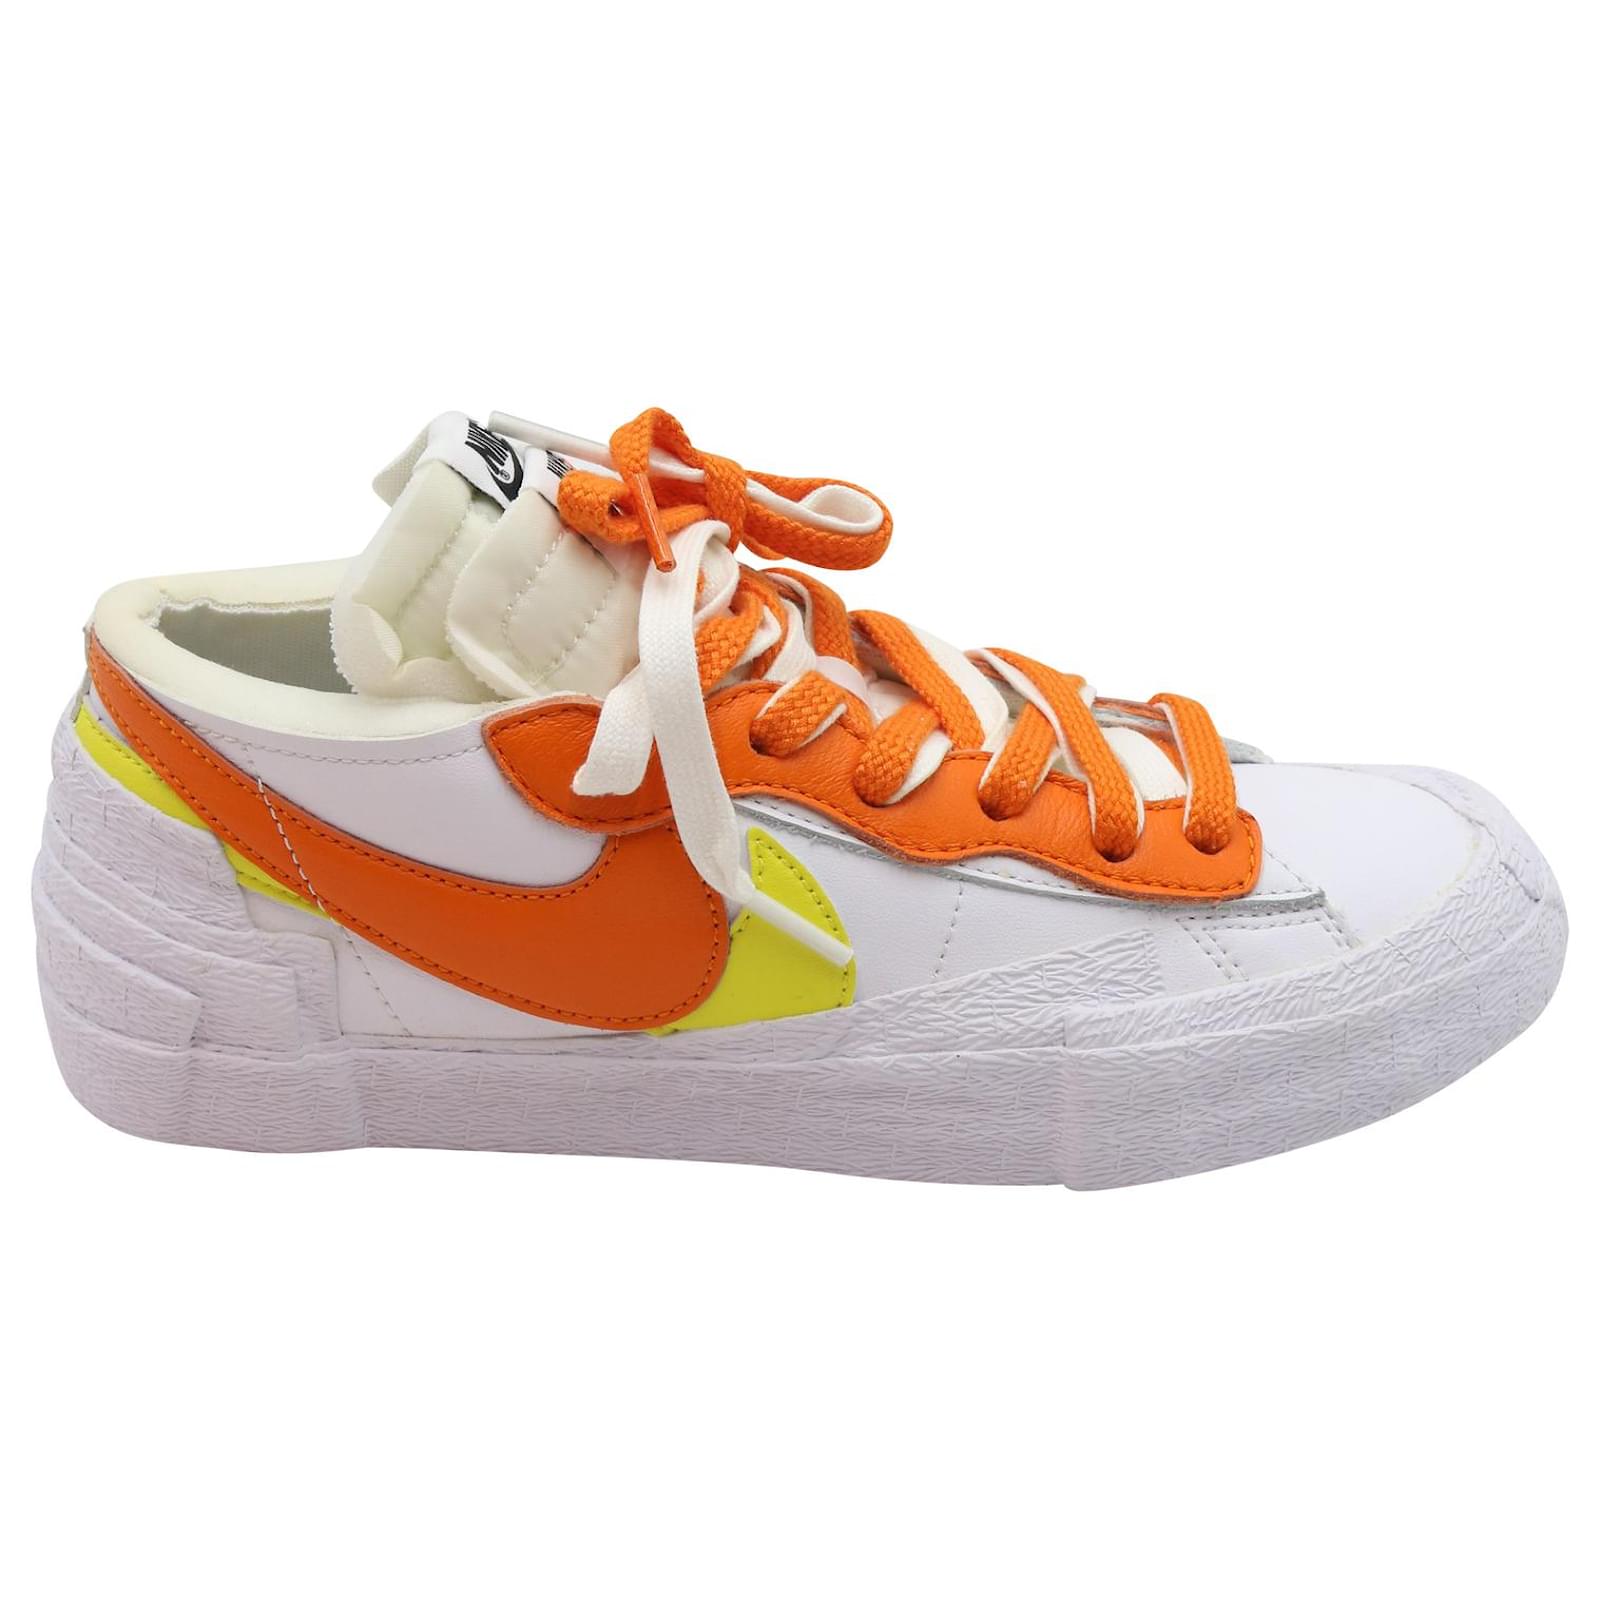 Autre Marque Nike x Sacai Blazer Low in Magma Orange Leather White